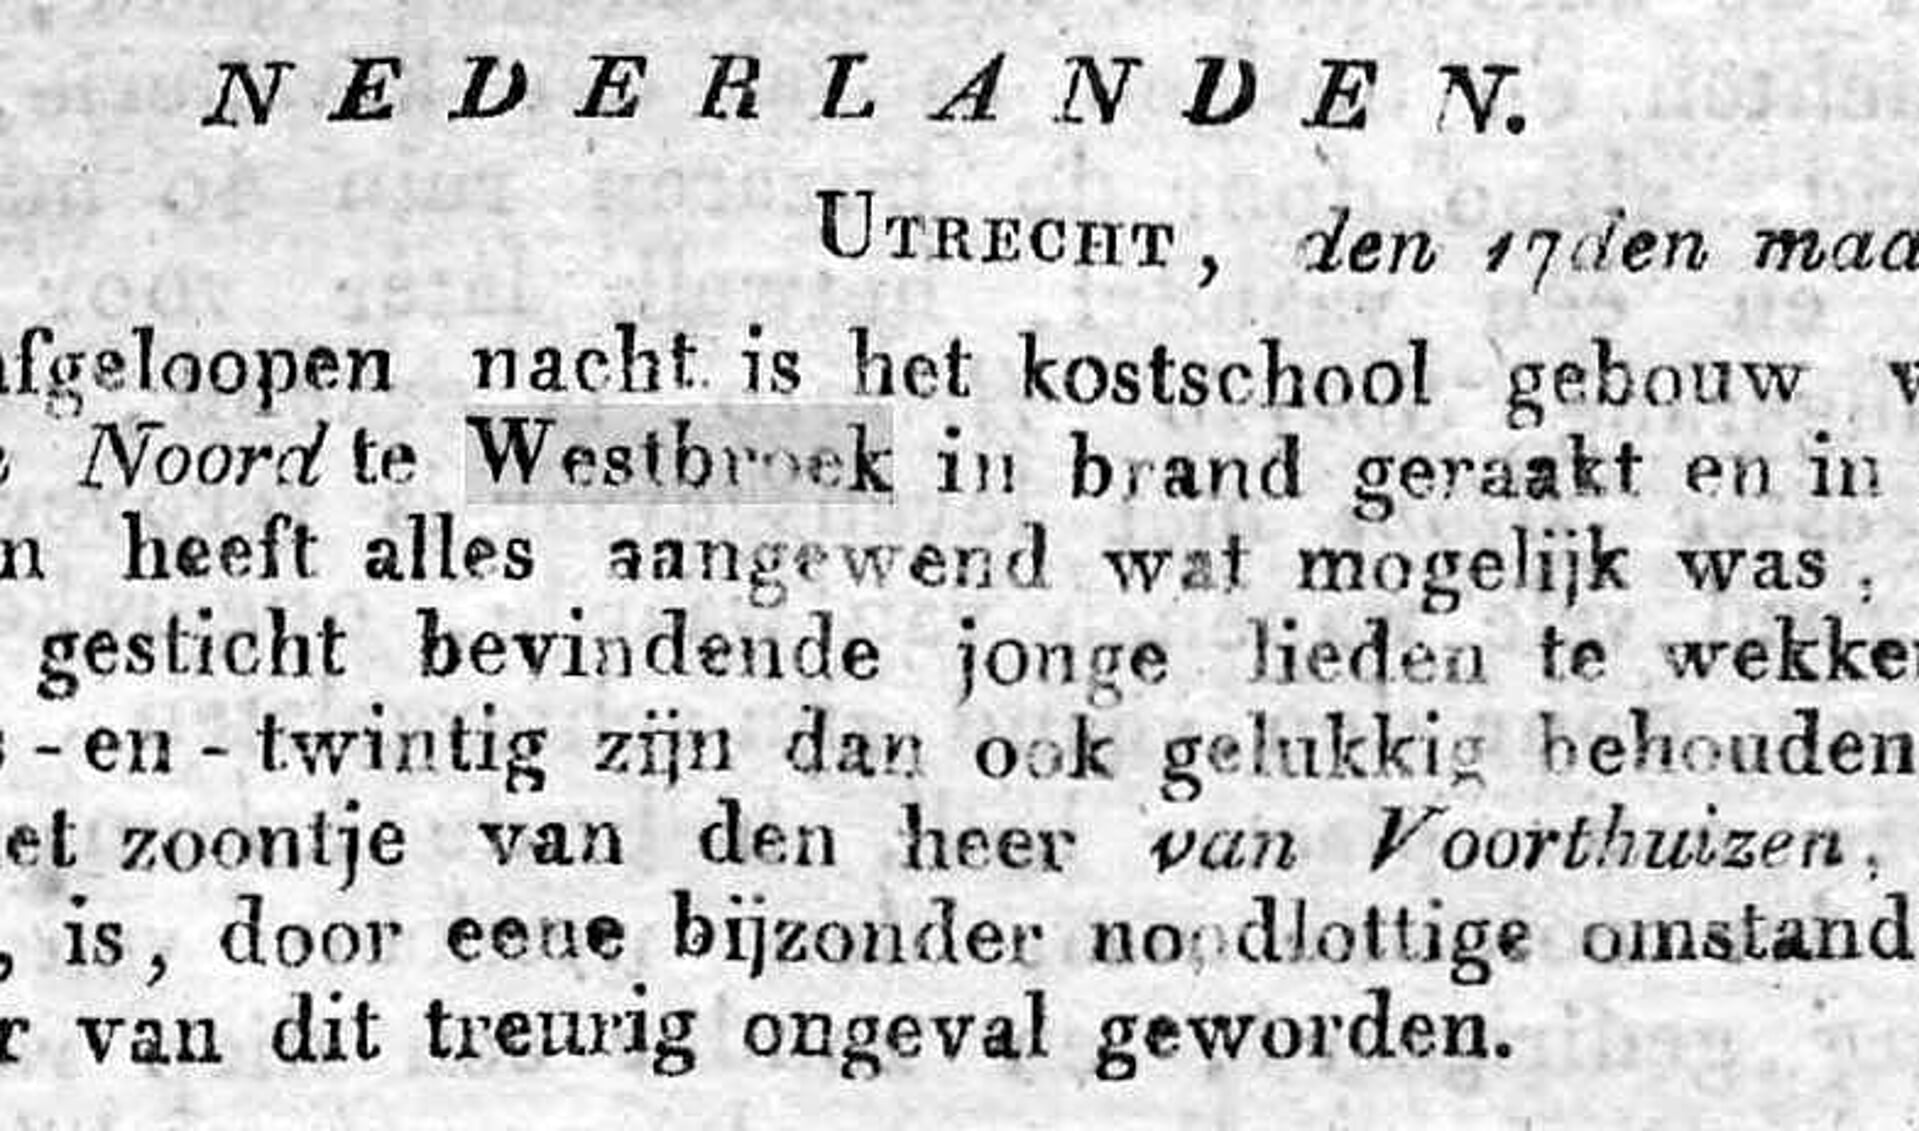 Dit bericht stamt uit de Javasche Courant van 24 juli 1828, vier maanden nadat de overigens onbekende kostschool voor jongelieden in Westbroek in vlammen was opgegaan.